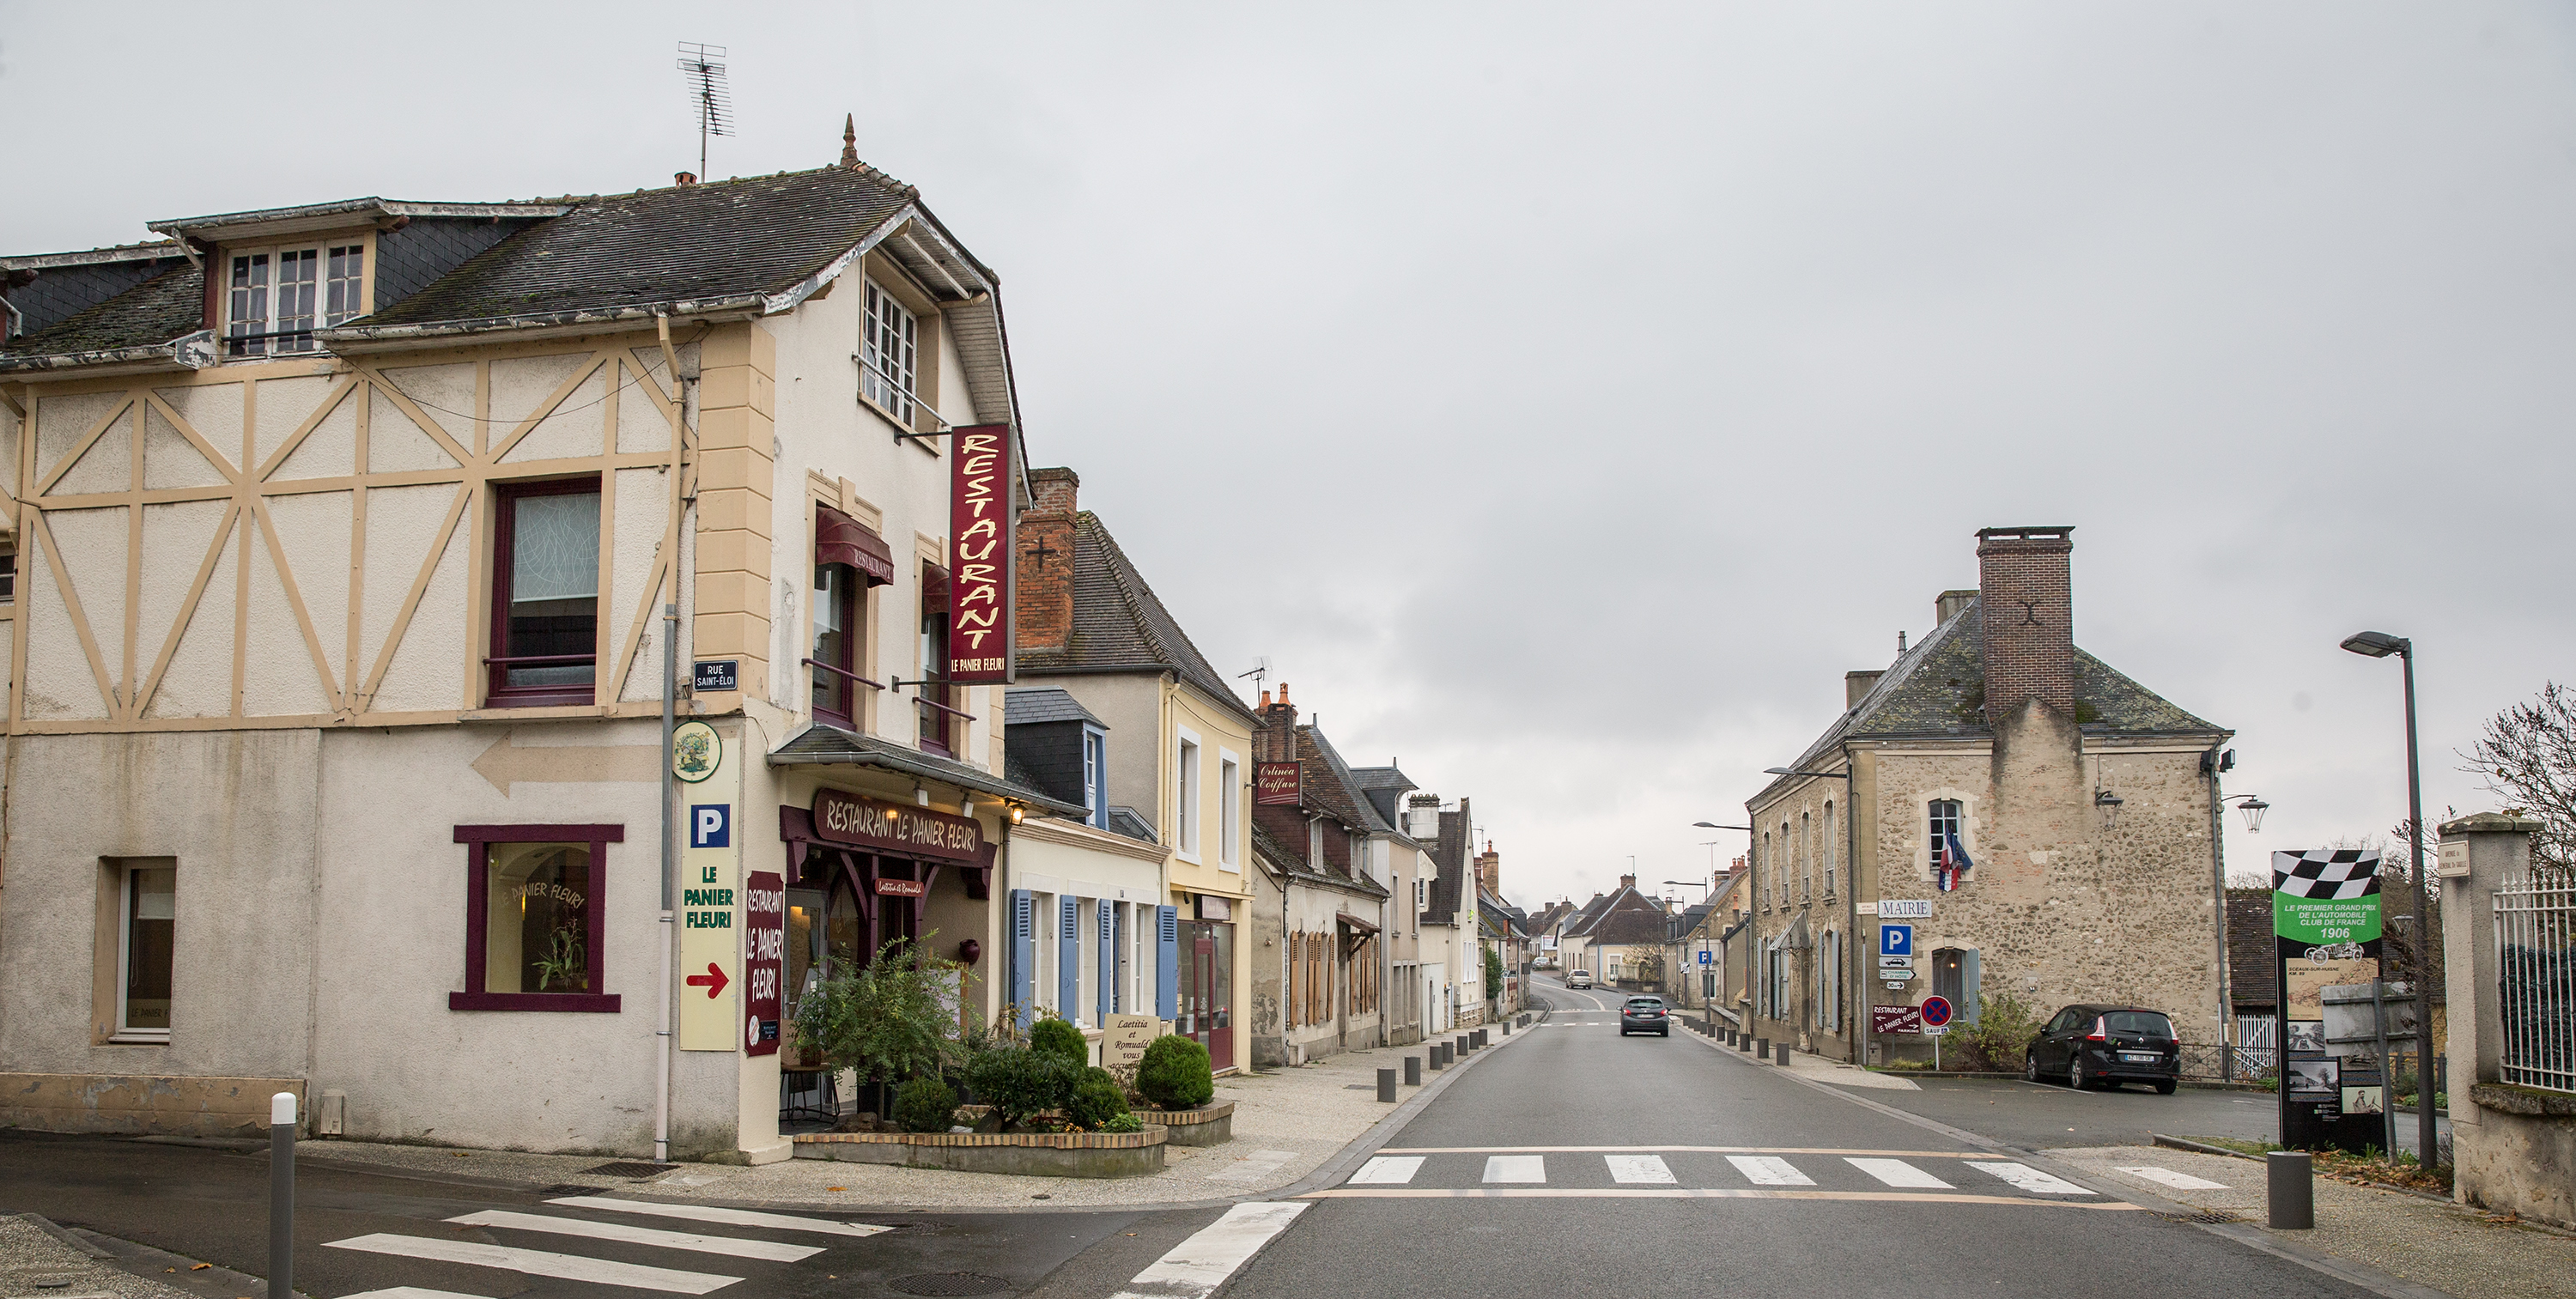 Sceaux-sur-Huisne : présentation du bourg